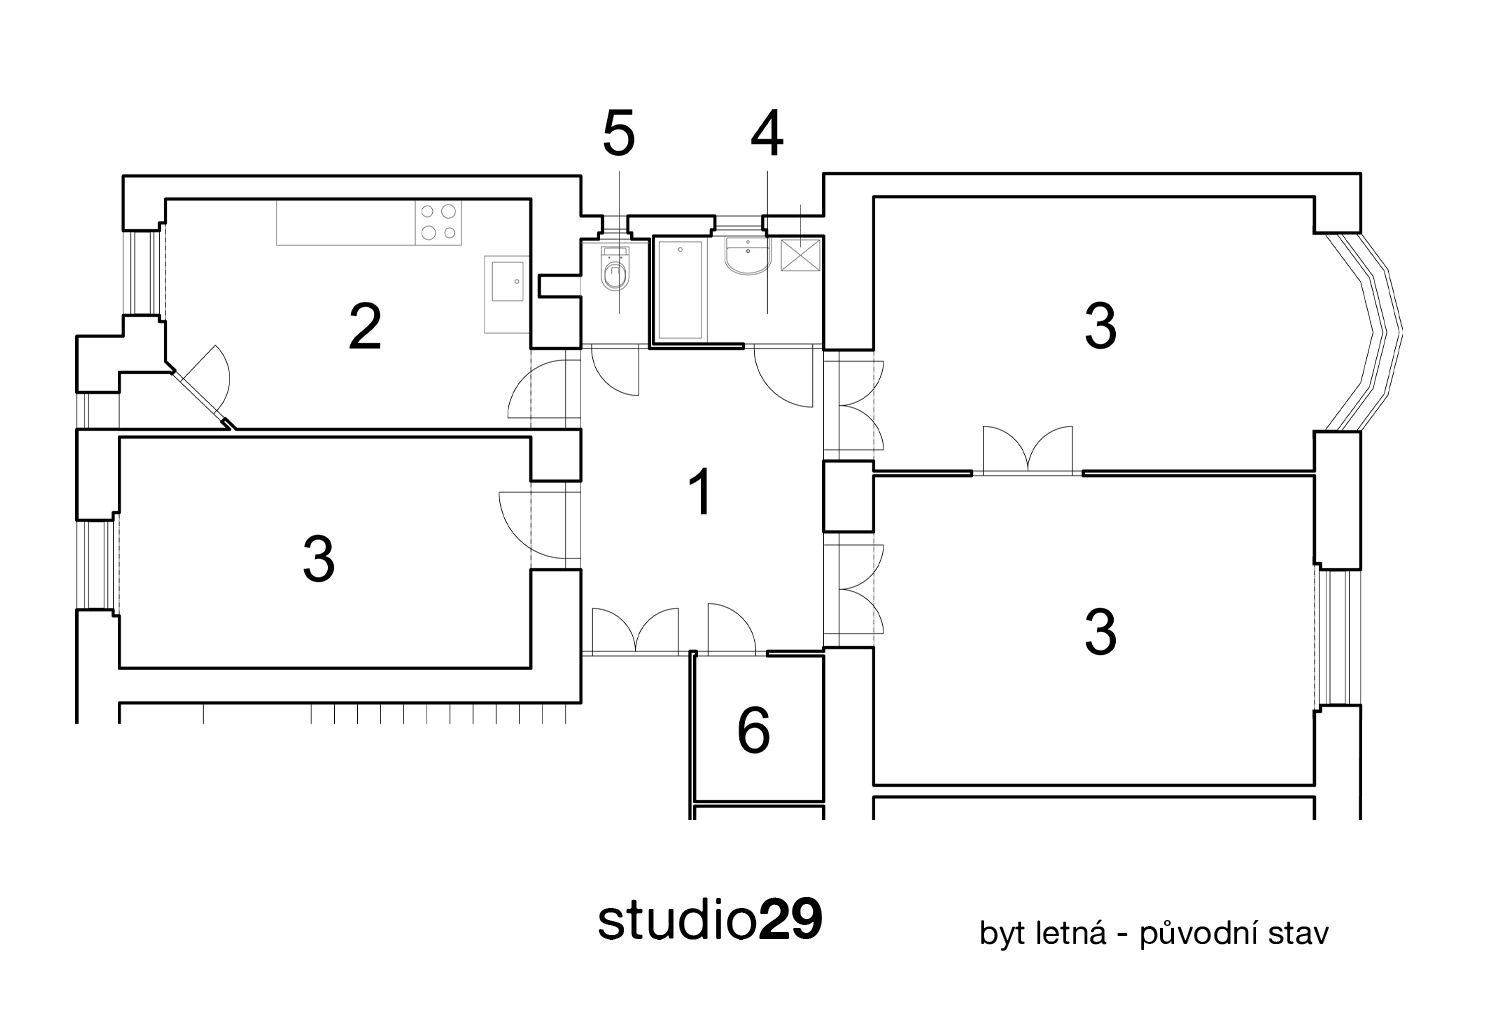 Původní stav: 1 - vstupní hala, 2 - kuchyně, 3 - pokoj, 4 - koupelna s kotlem, 5 - WC, 6 - komora